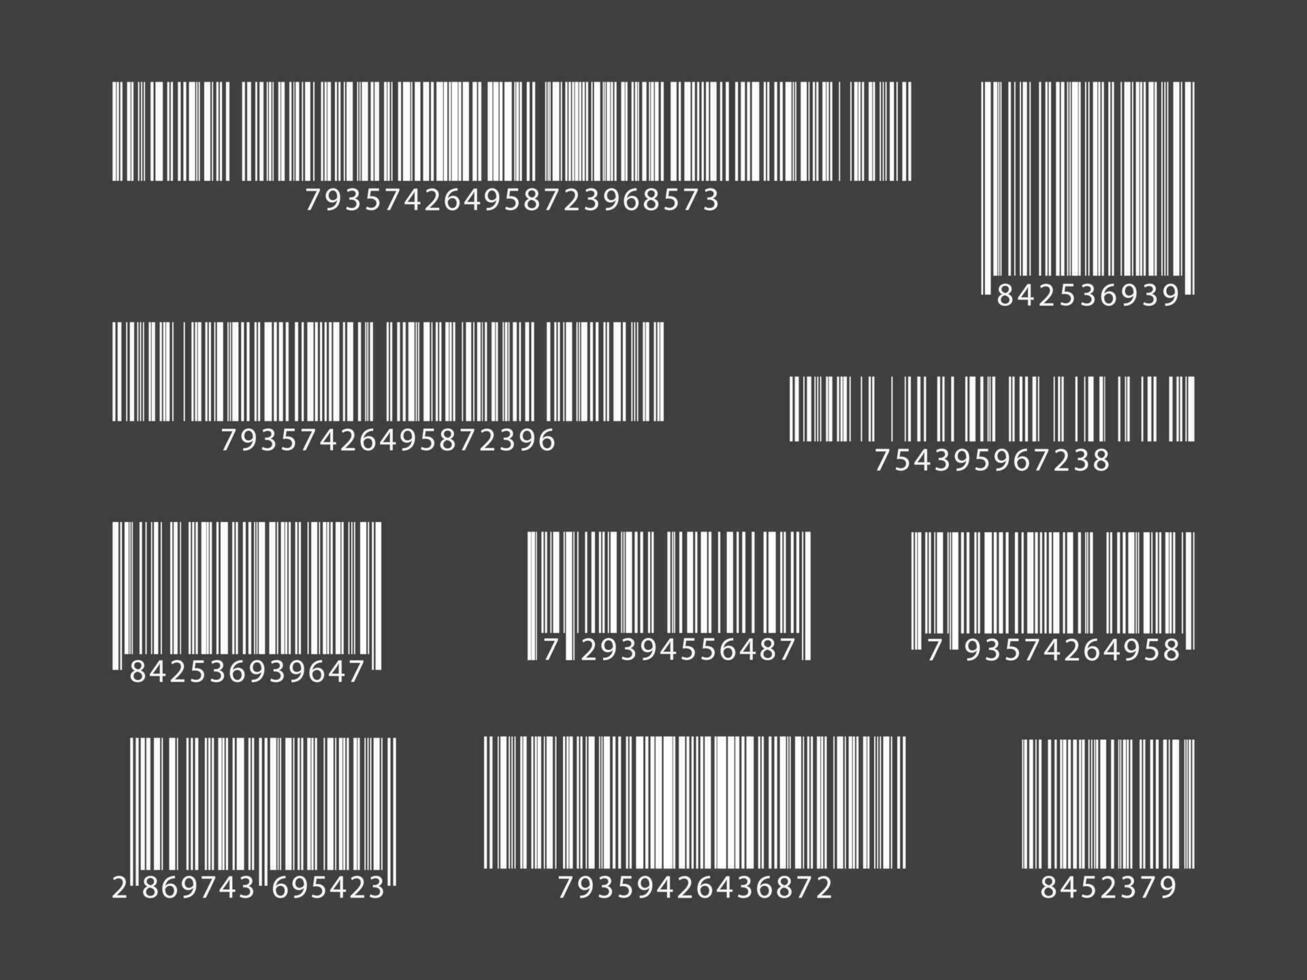 reeks van barcodes. verzameling qr codes. vector illustratie